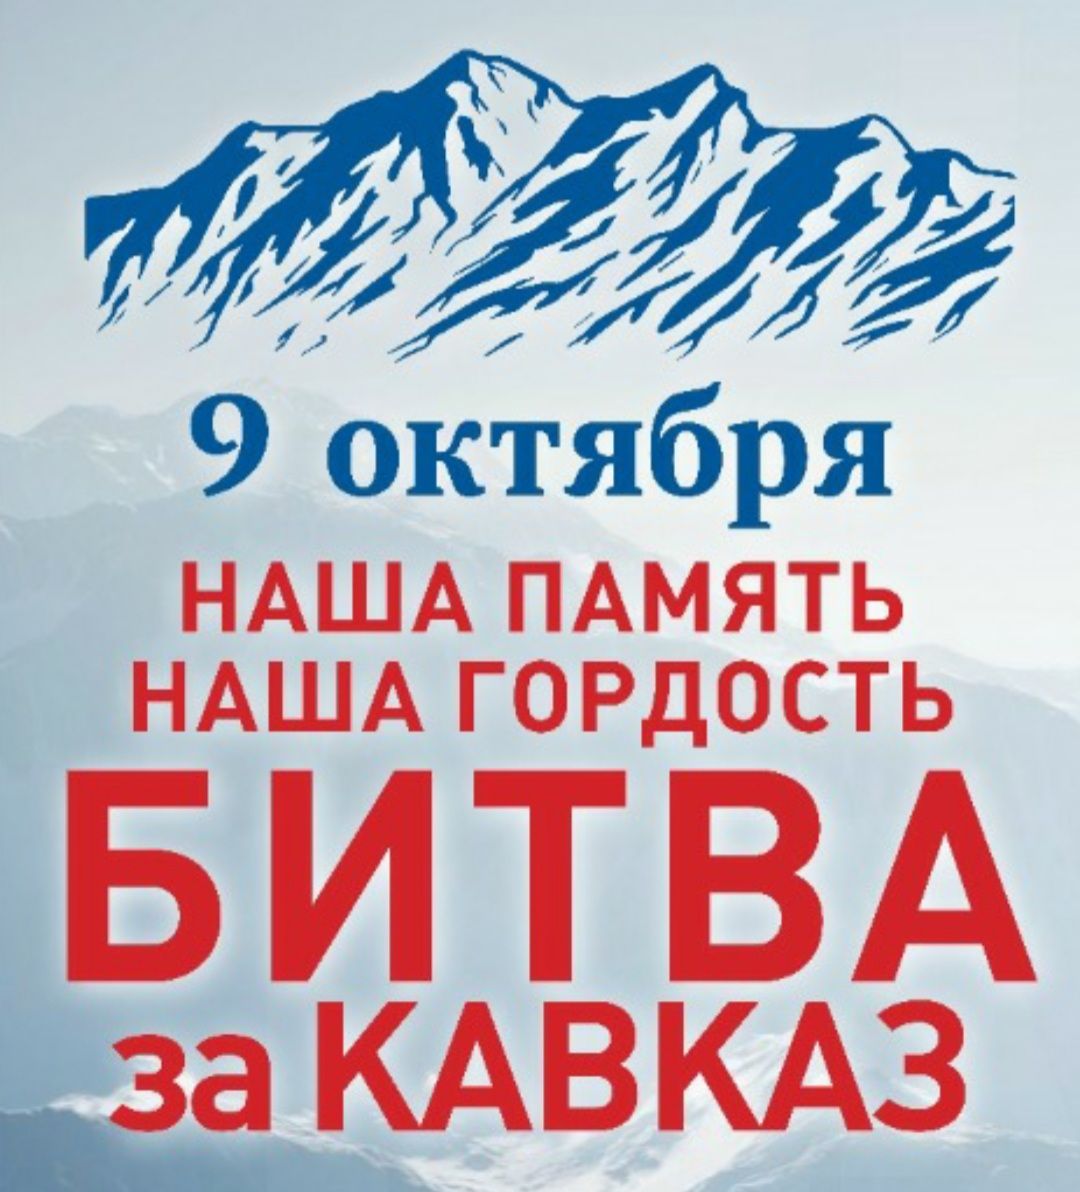 Форум "Наша память. Наша гордость. Битва за Кавказ"